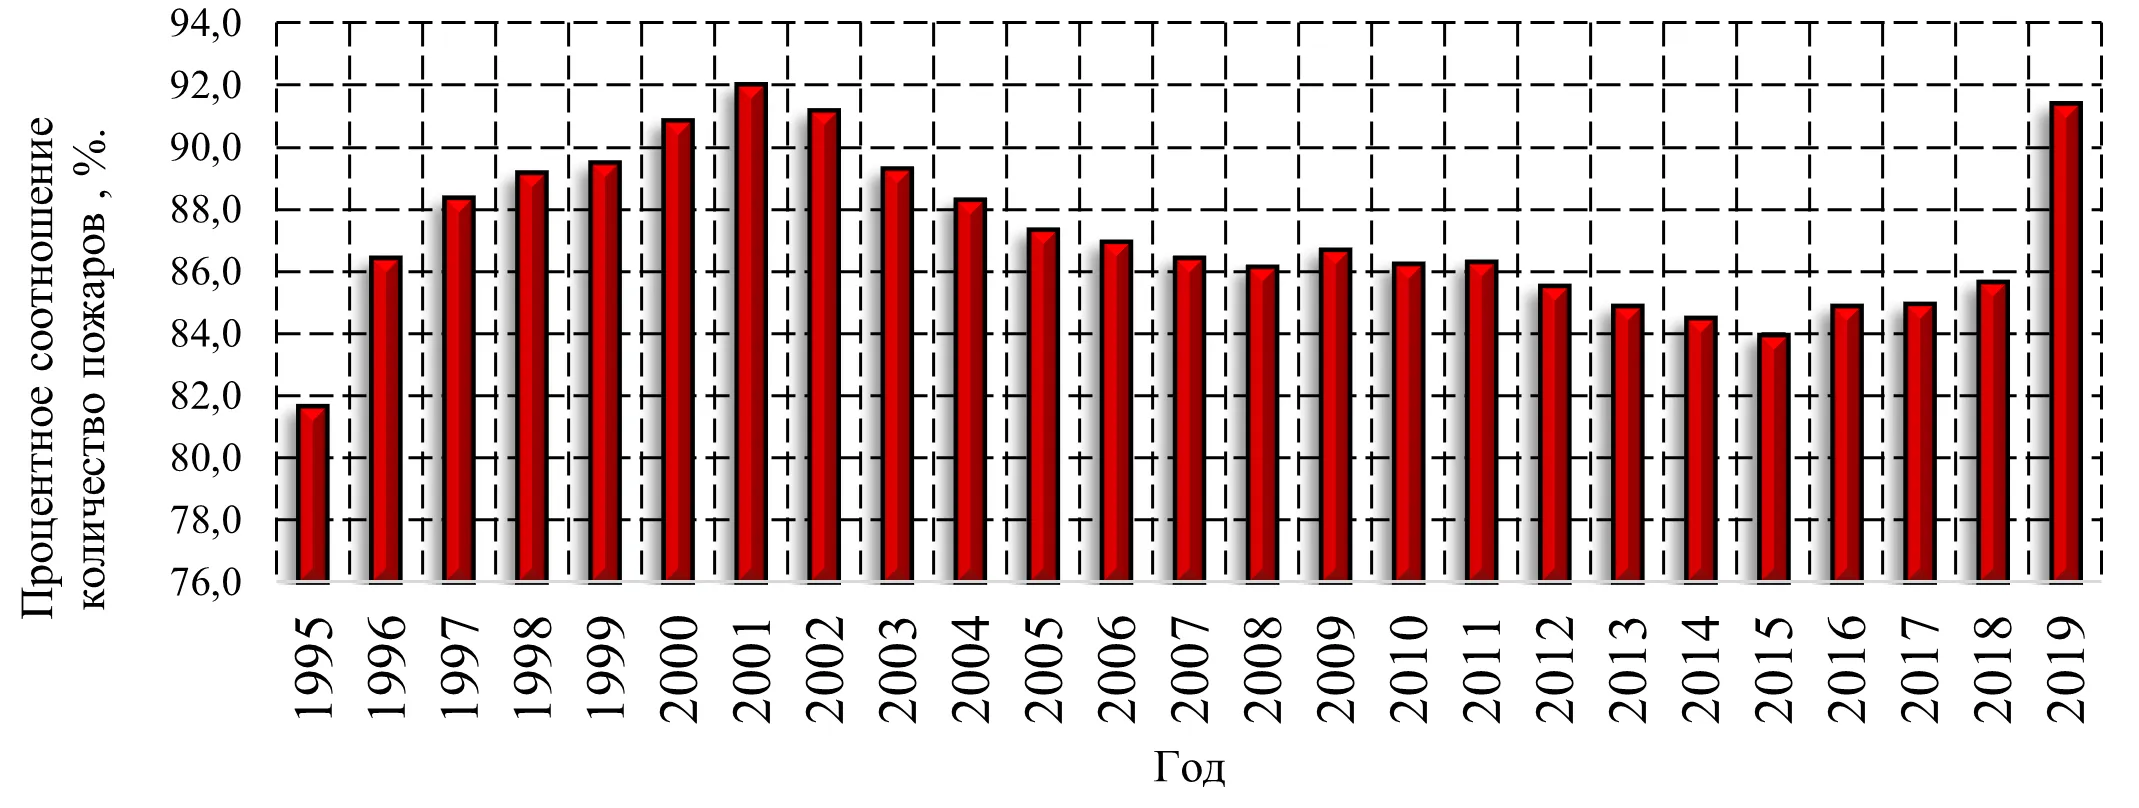 Гистограмма распределения процентного соотношения количества пожаров по причине нарушения правил пожарной безопасности и неосторожного обращения с огнем к общему количеству пожаров в Российской Федерации с 1995 по 2019 года